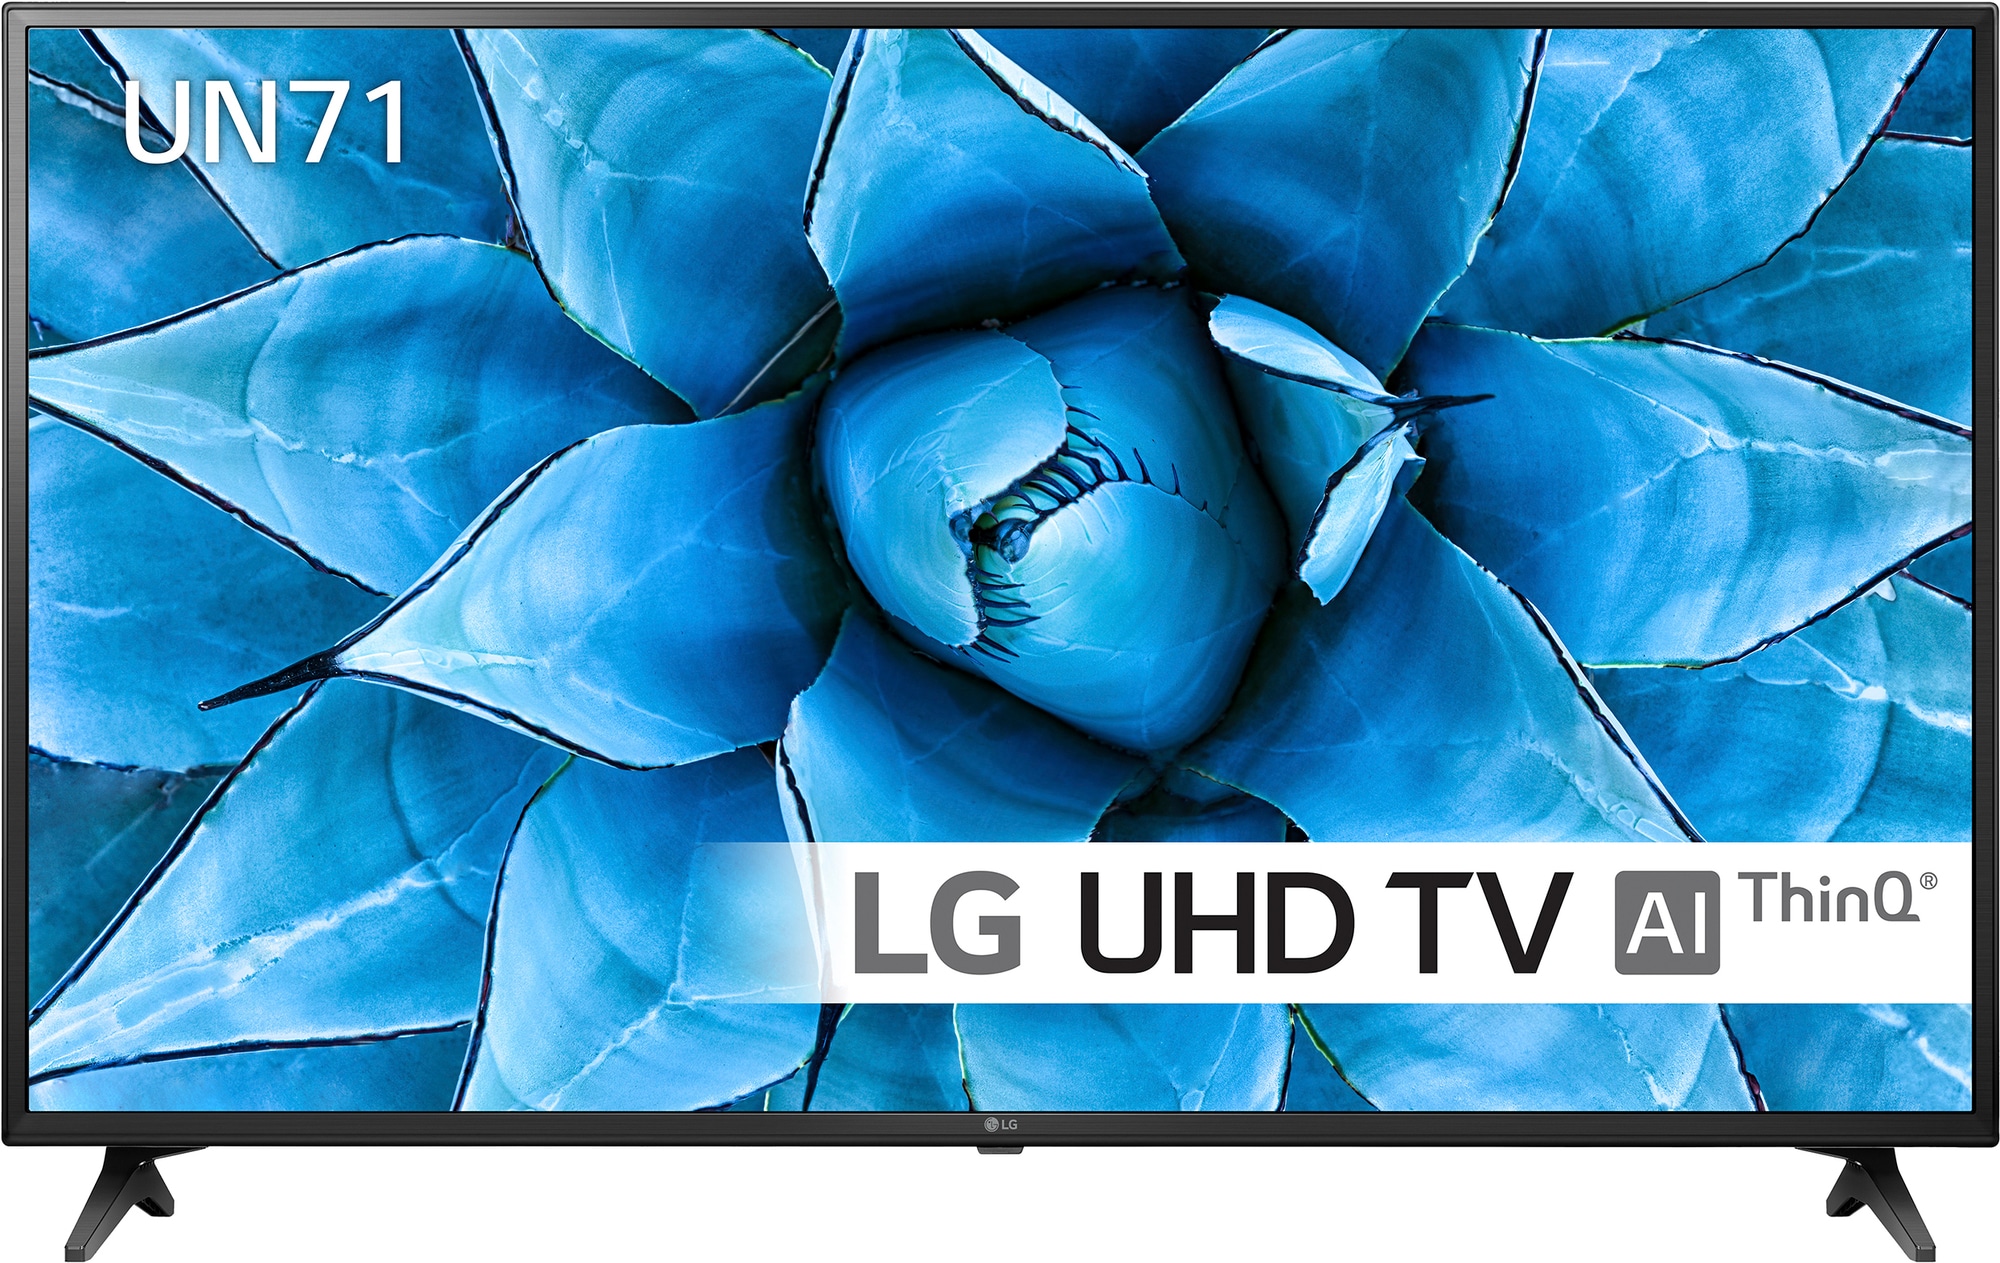 LG 43" UN71 4K UHD smart-TV 43UN7100 (2020) - Elkjøp